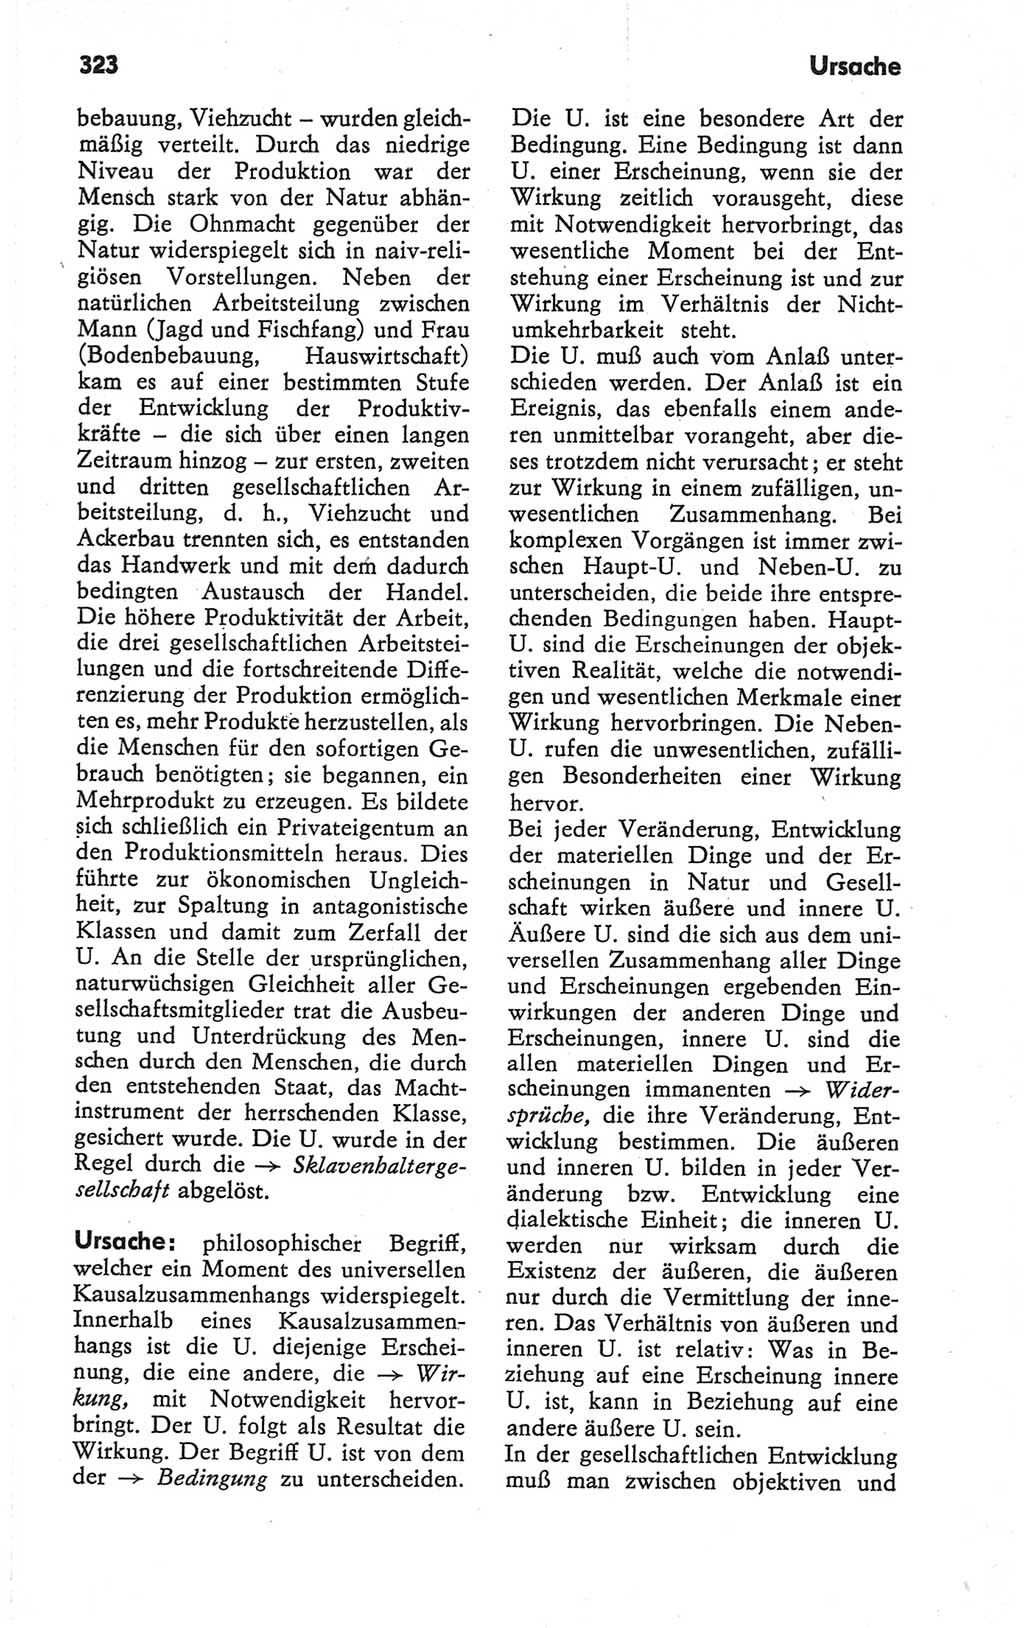 Kleines Wörterbuch der marxistisch-leninistischen Philosophie [Deutsche Demokratische Republik (DDR)] 1979, Seite 323 (Kl. Wb. ML Phil. DDR 1979, S. 323)